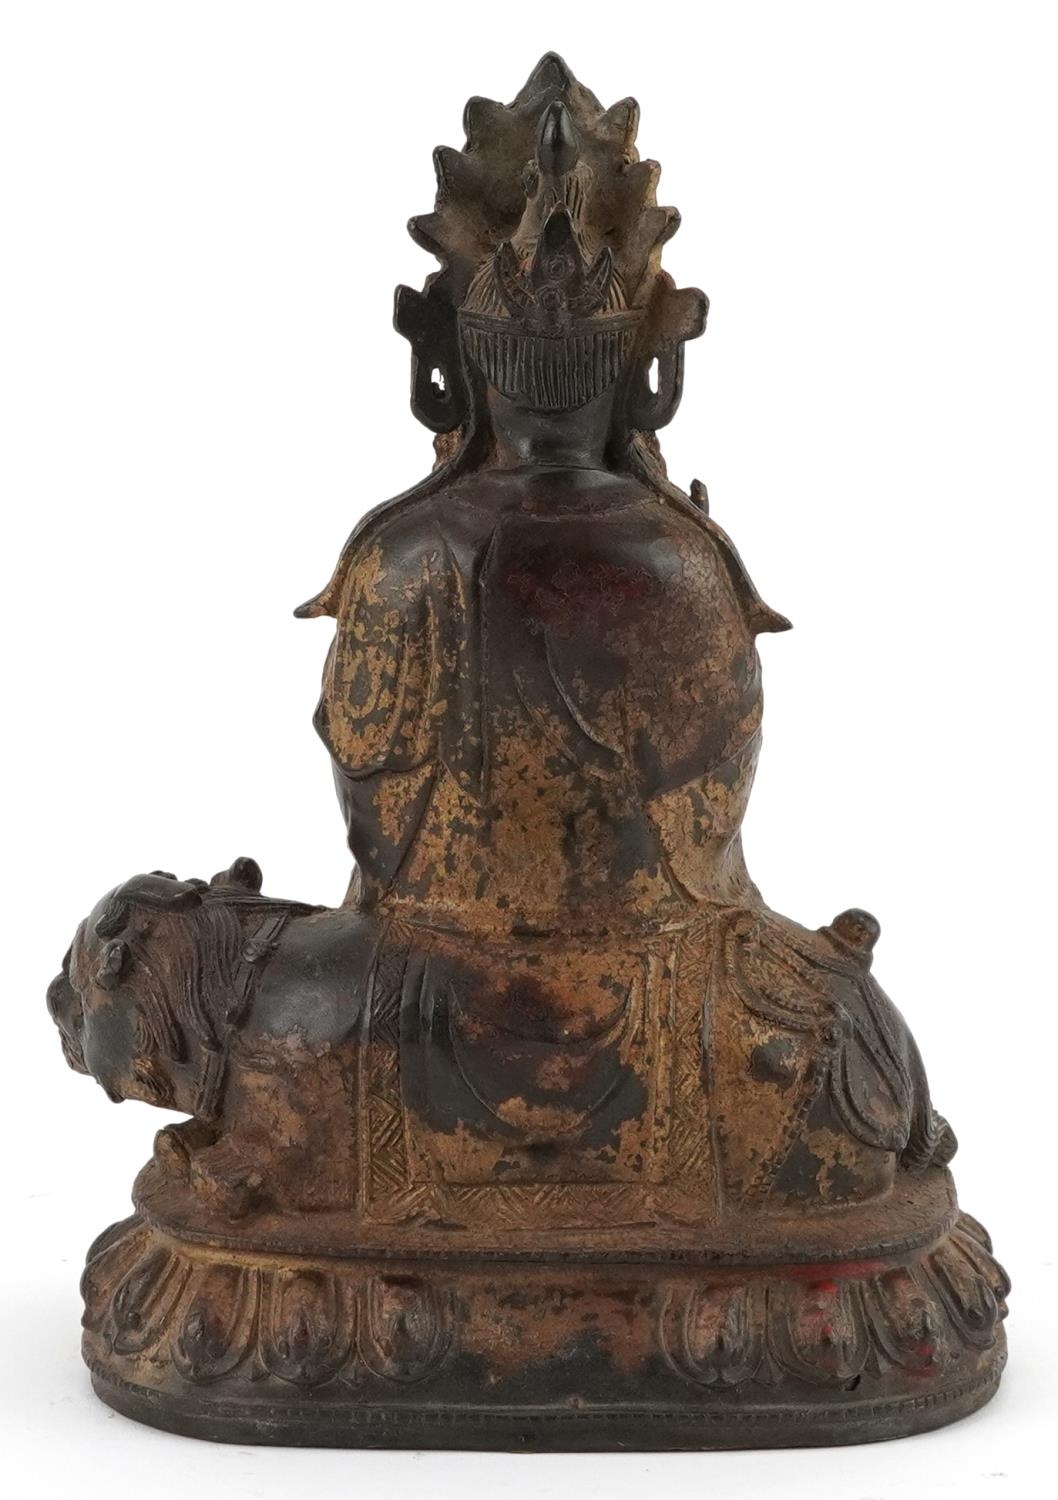 Chino Tibetan gilt bronze figure of Buddha on mythical animal, 22.5cm high - Image 4 of 7